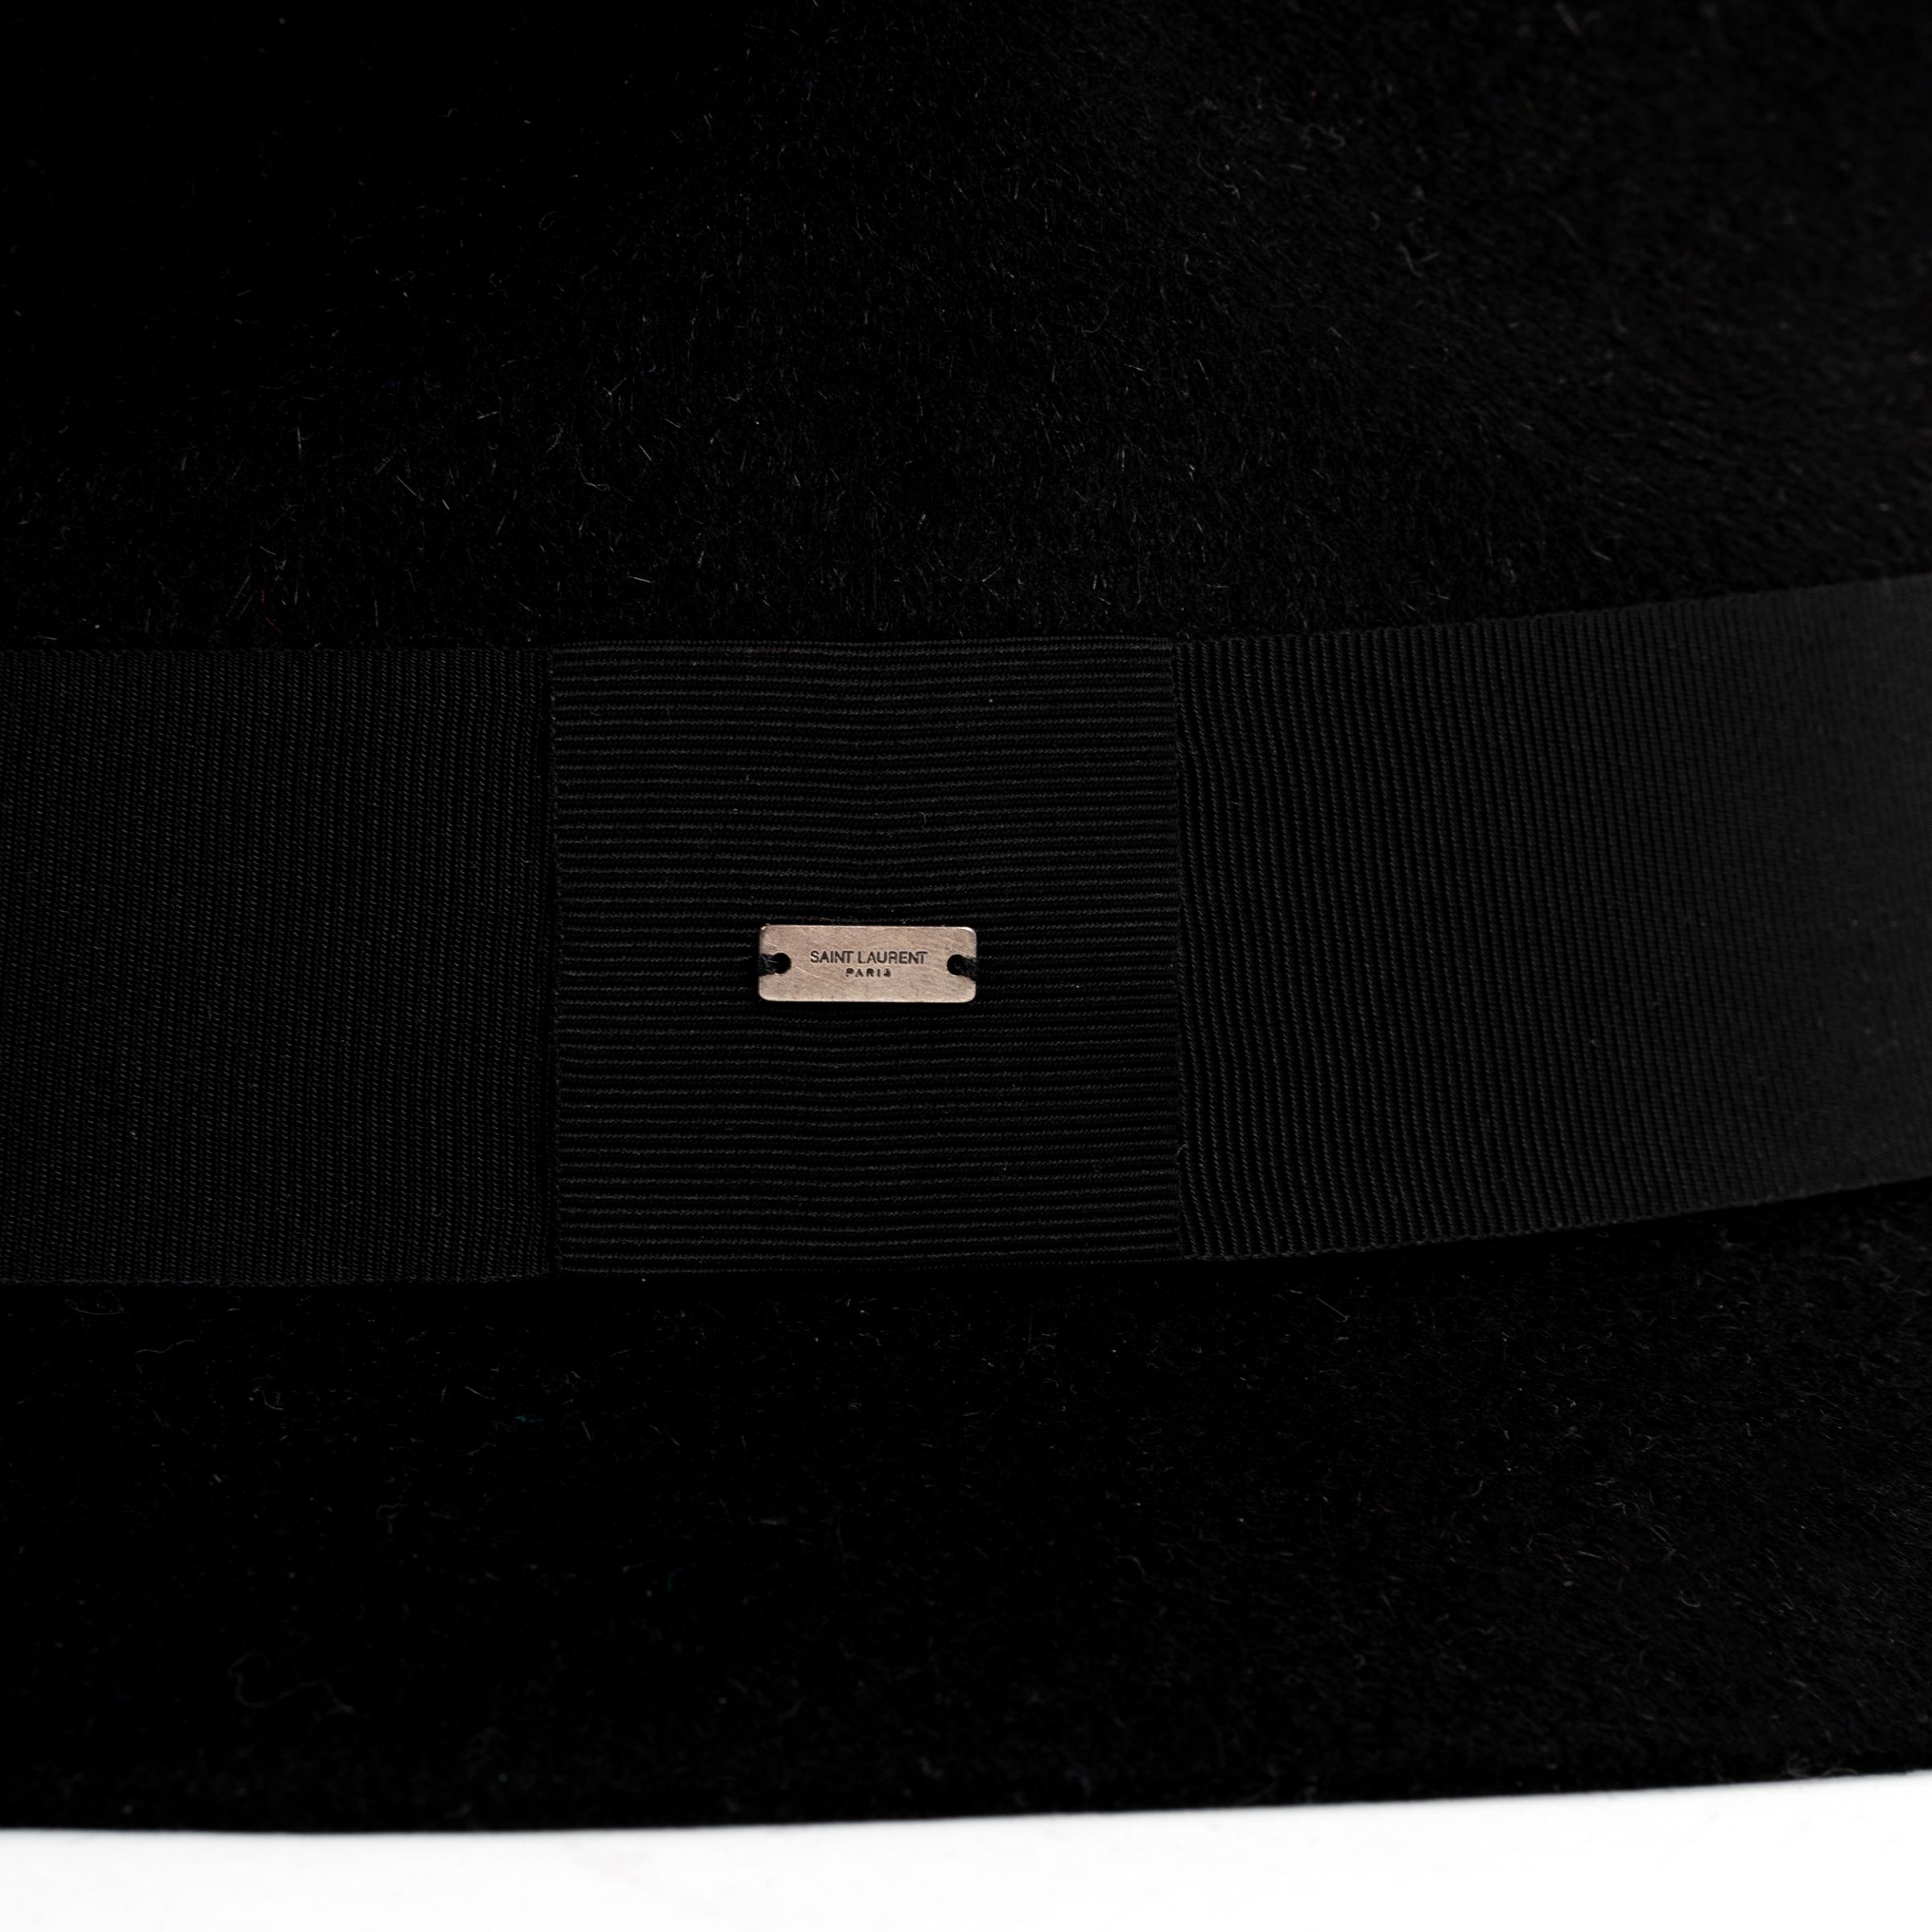 Шляпа Saint Laurent Chapeau черная